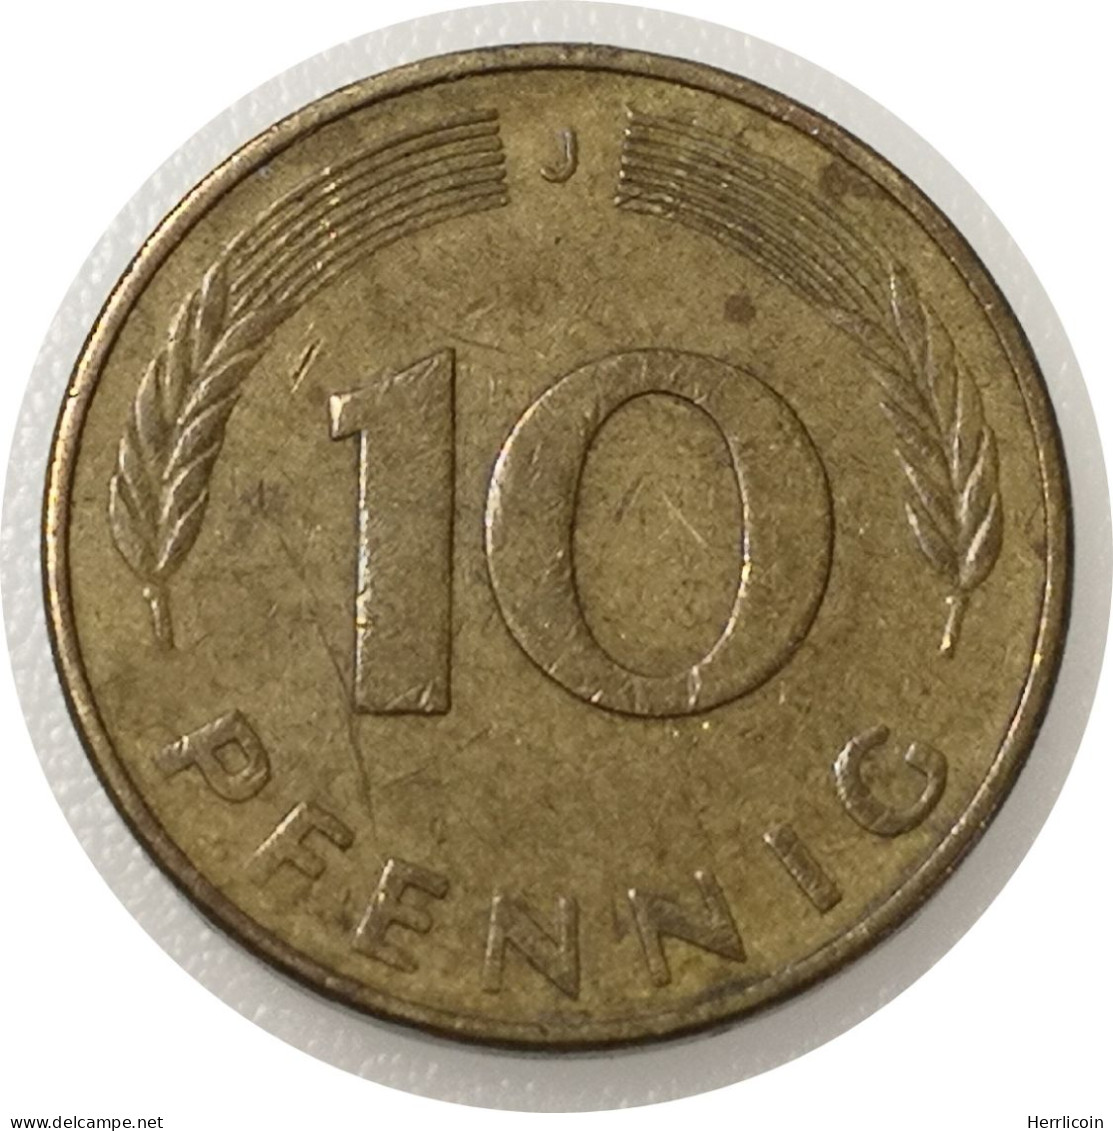 Monnaie Allemagne - 1979 J - 10 Pfennig - 10 Pfennig